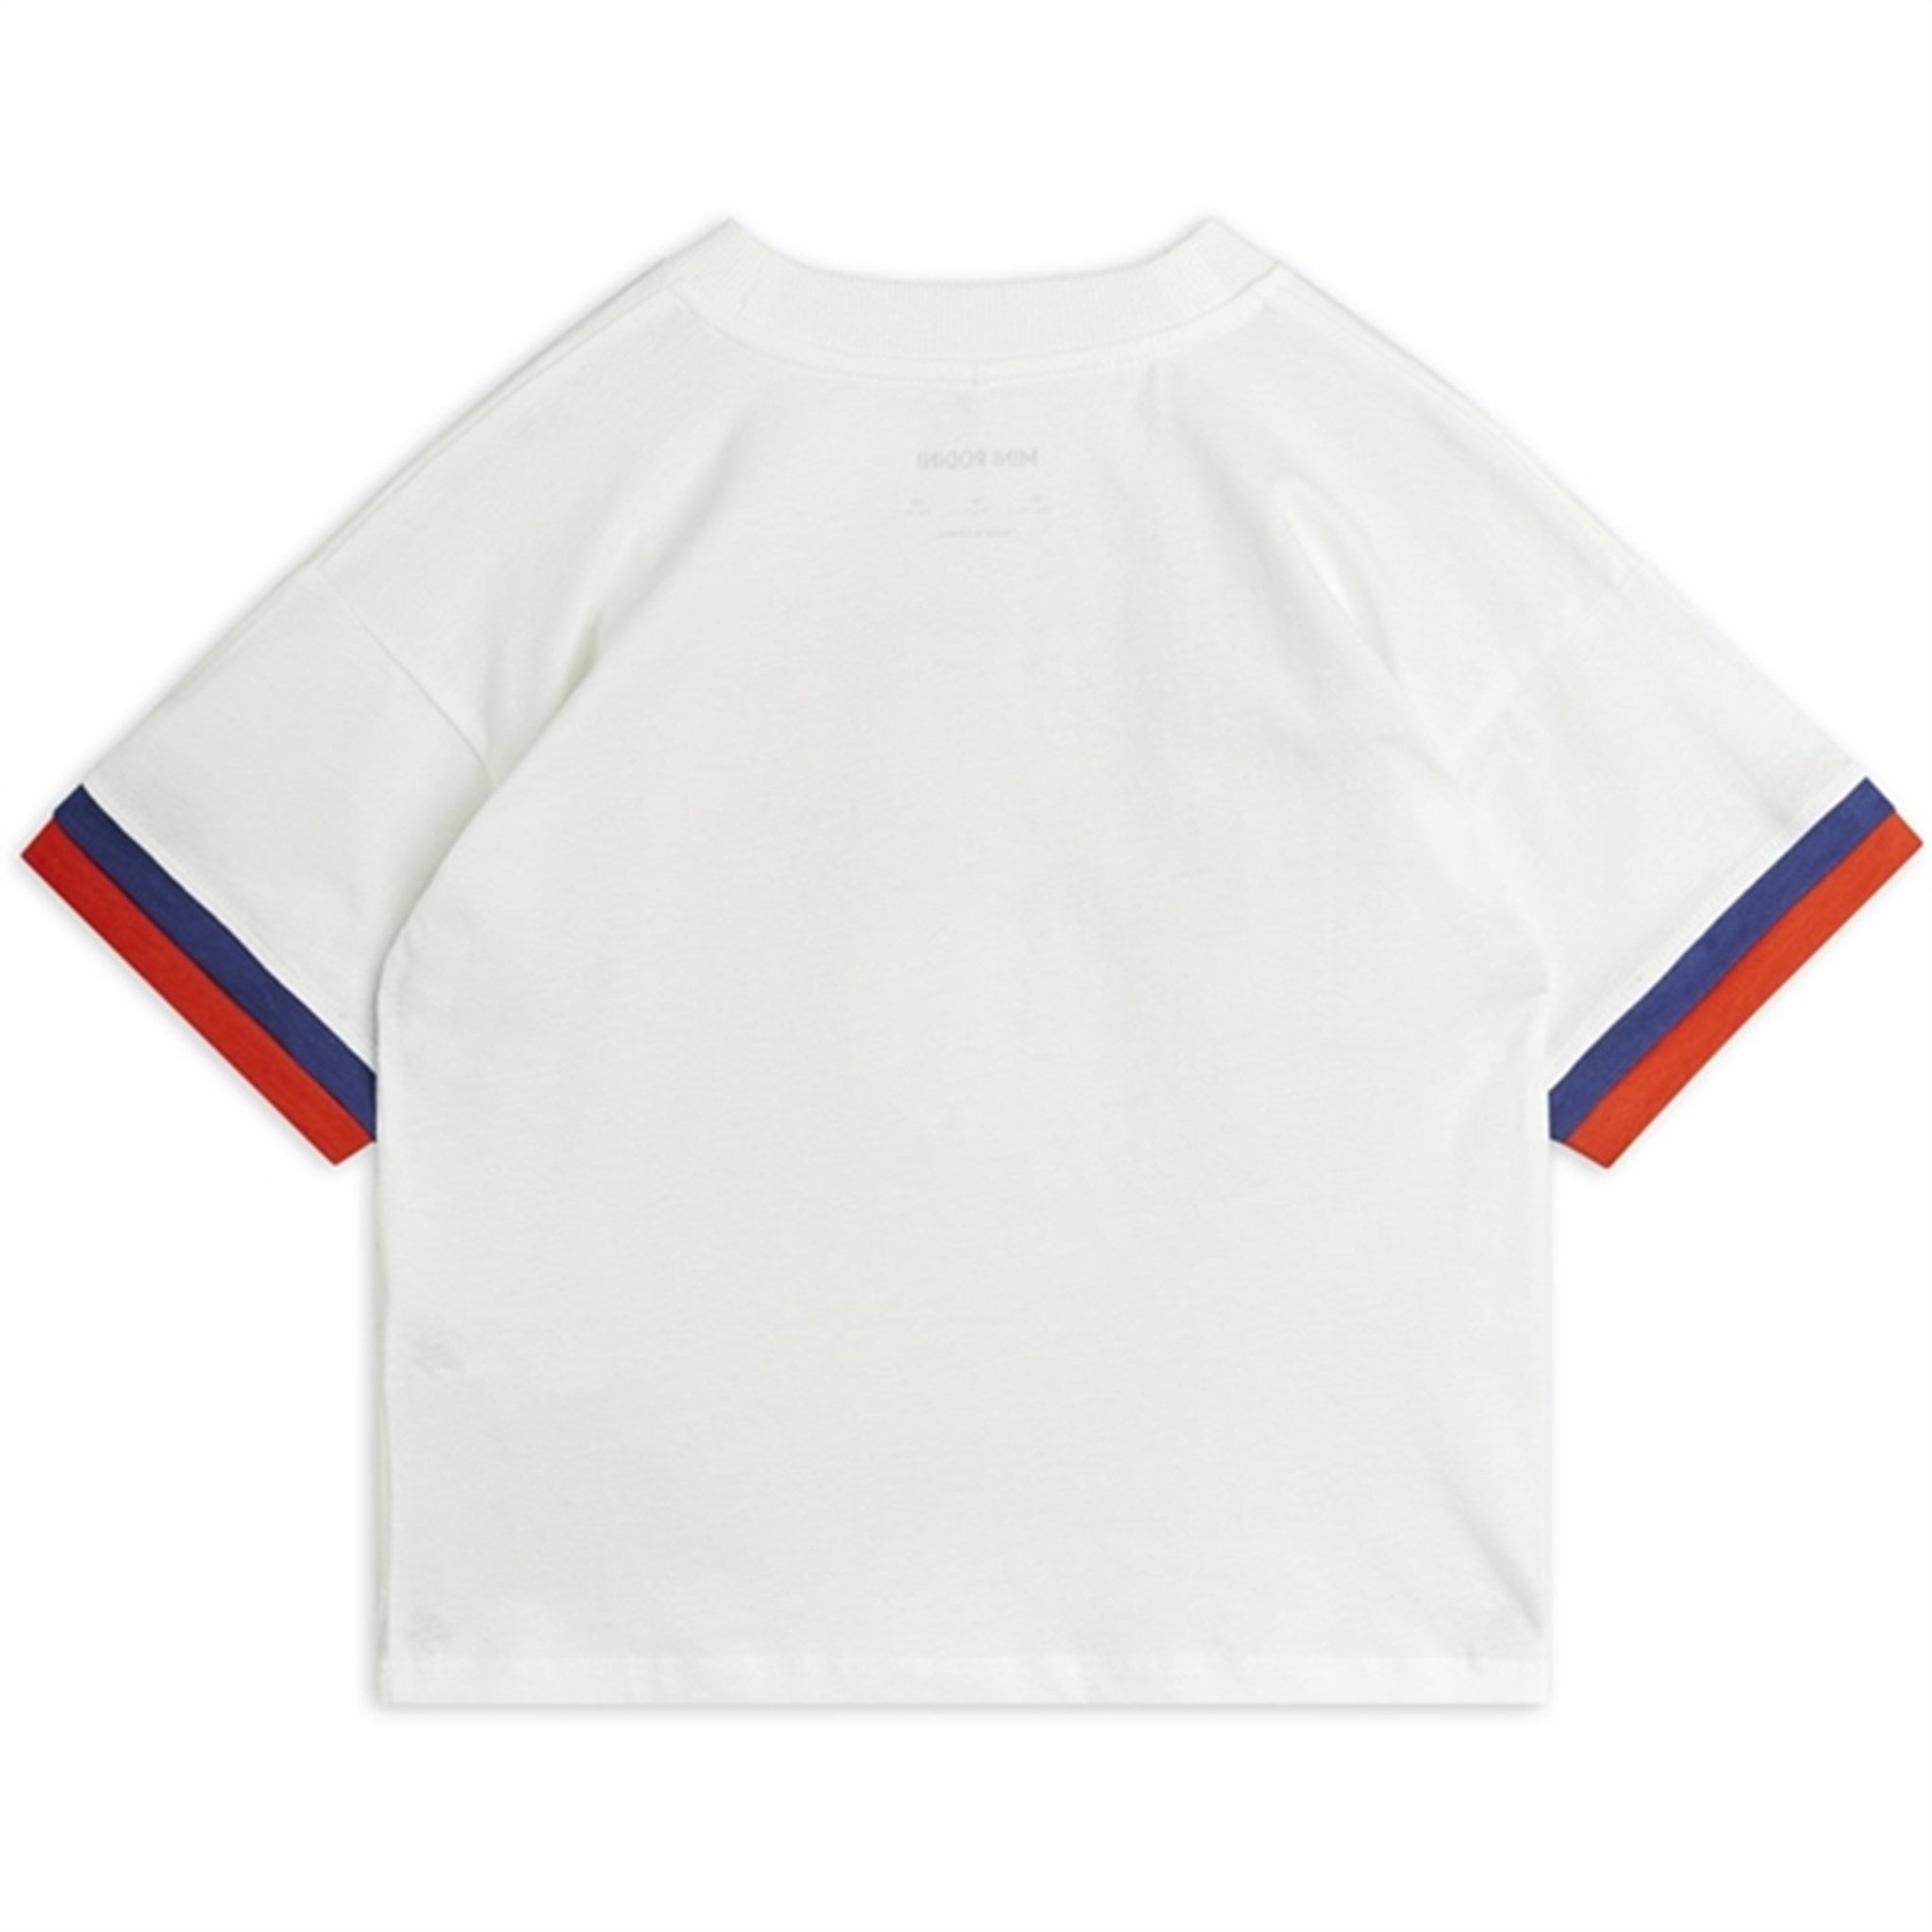 Mini Rodini Offwhite Super Sporty Sp T-shirt 2